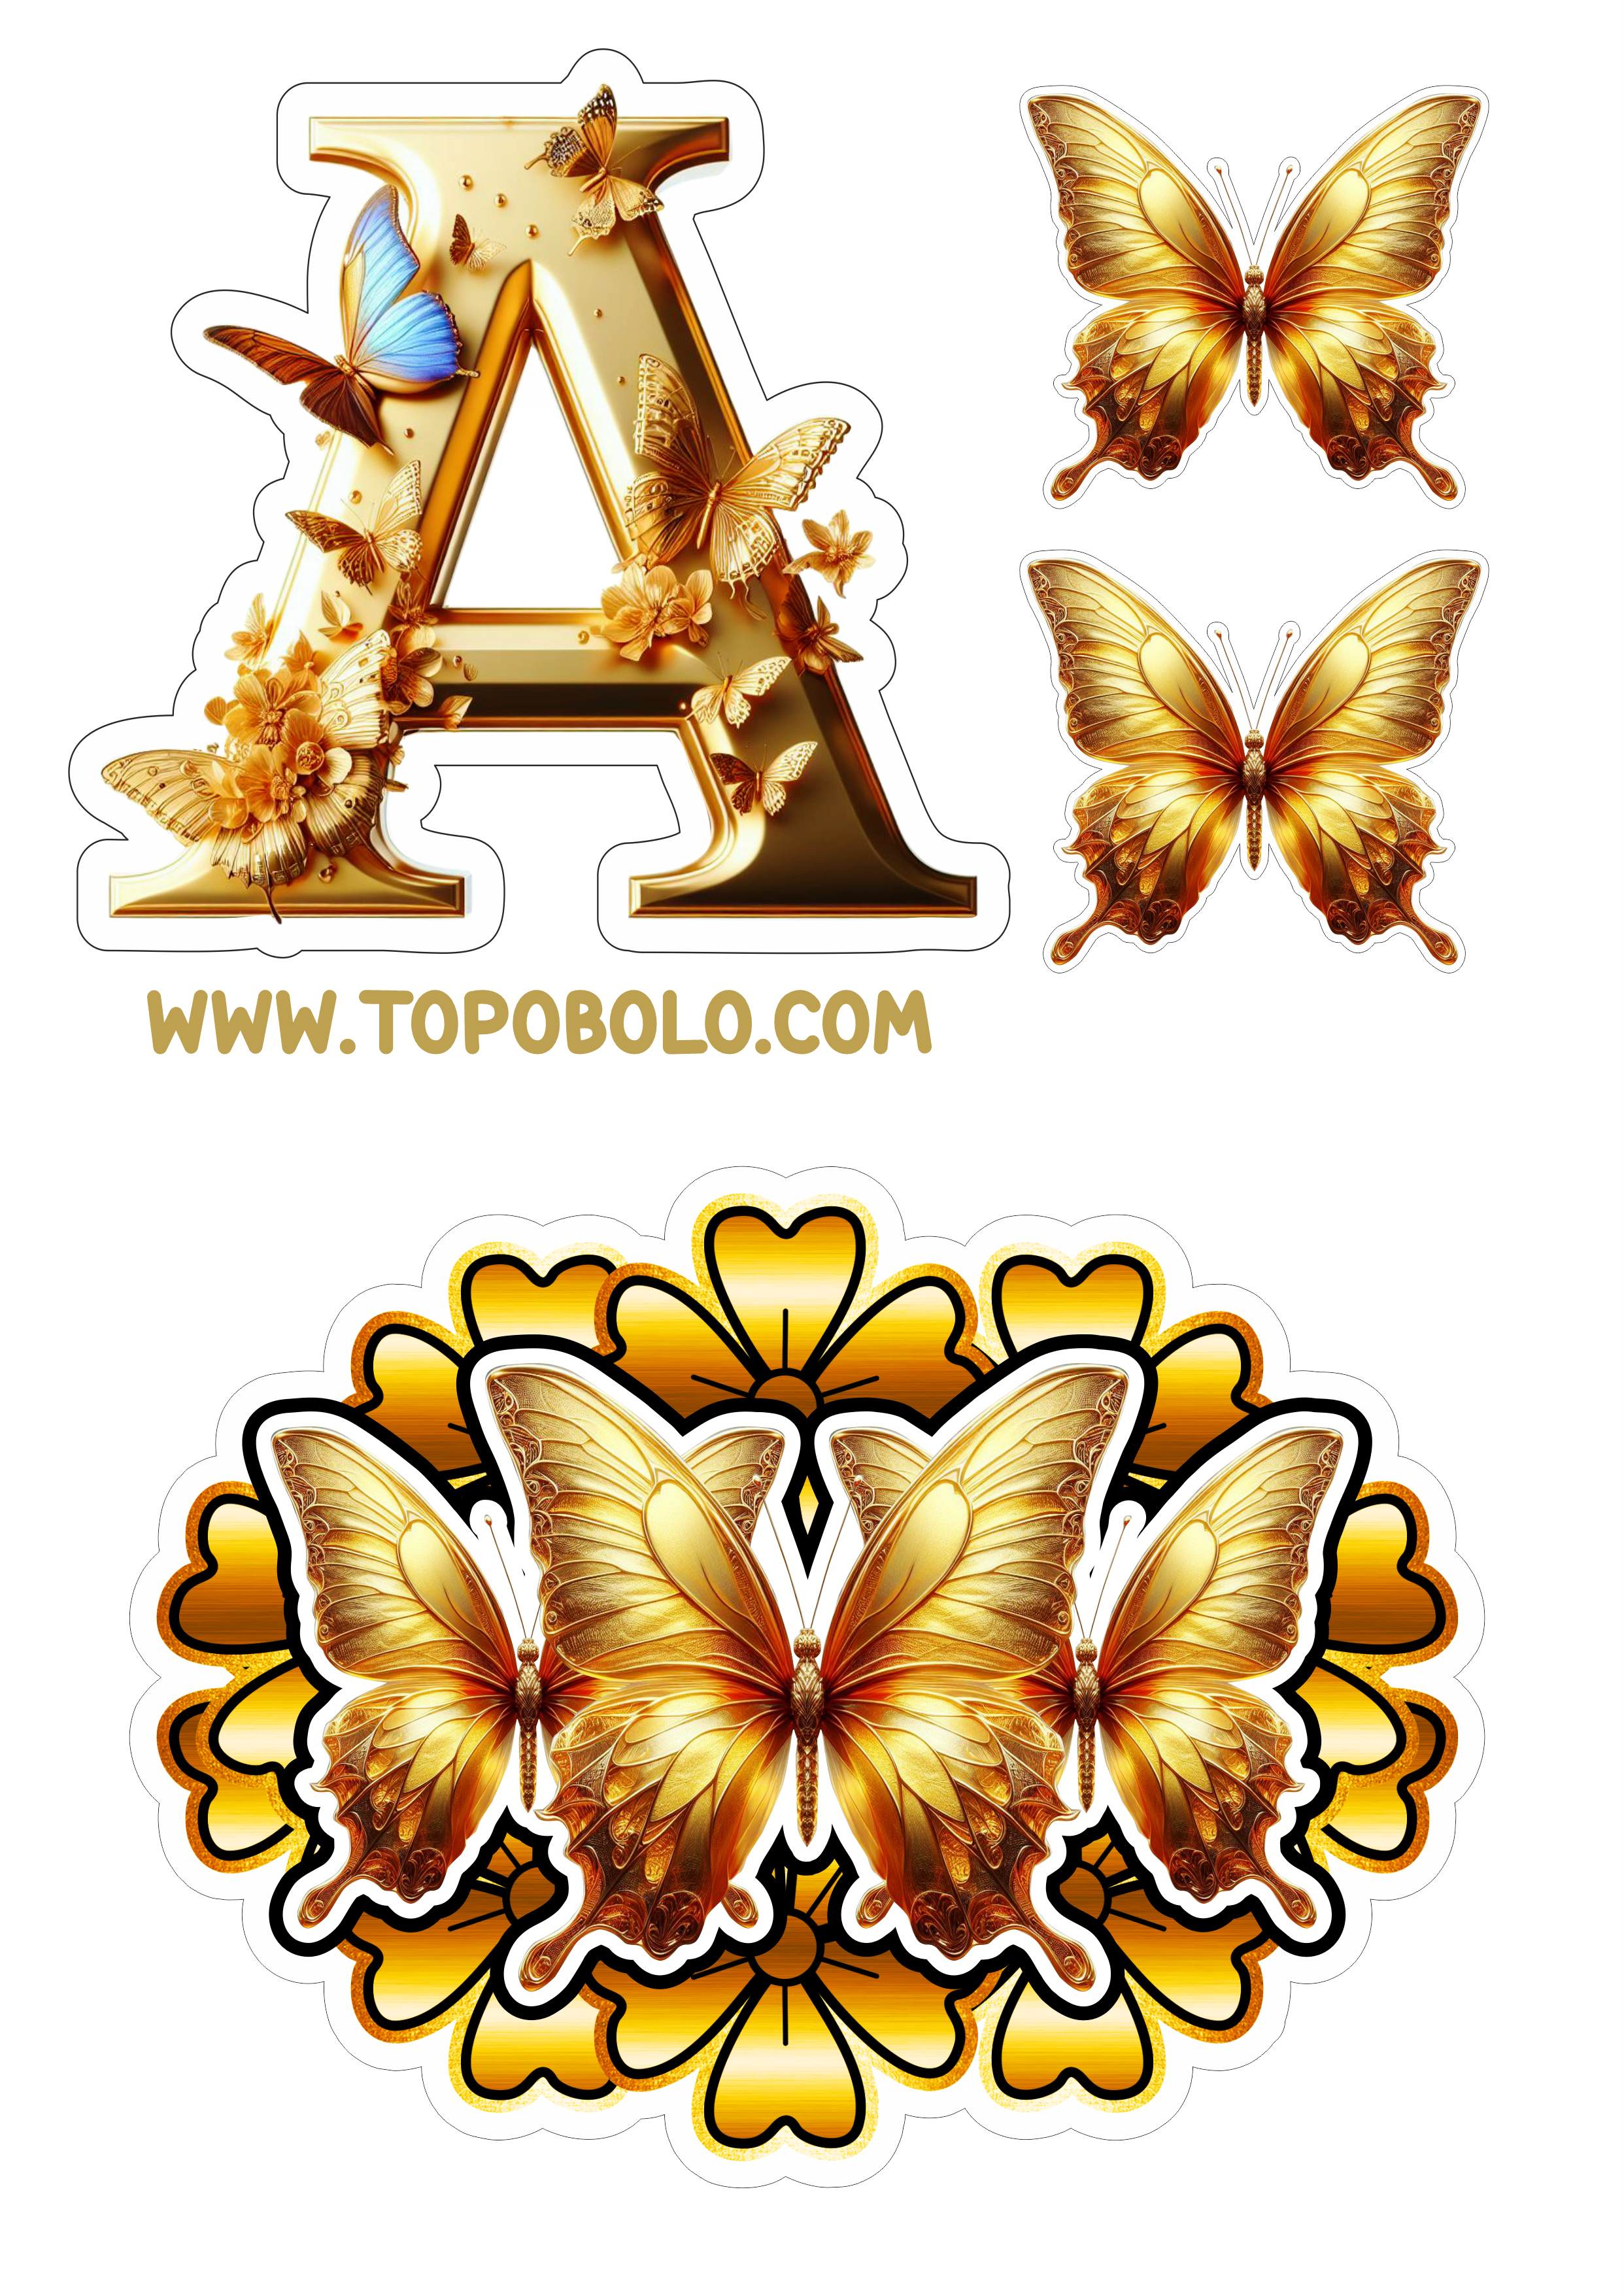 Topo de bolo letras douradas com borboletas e flores aniversário png